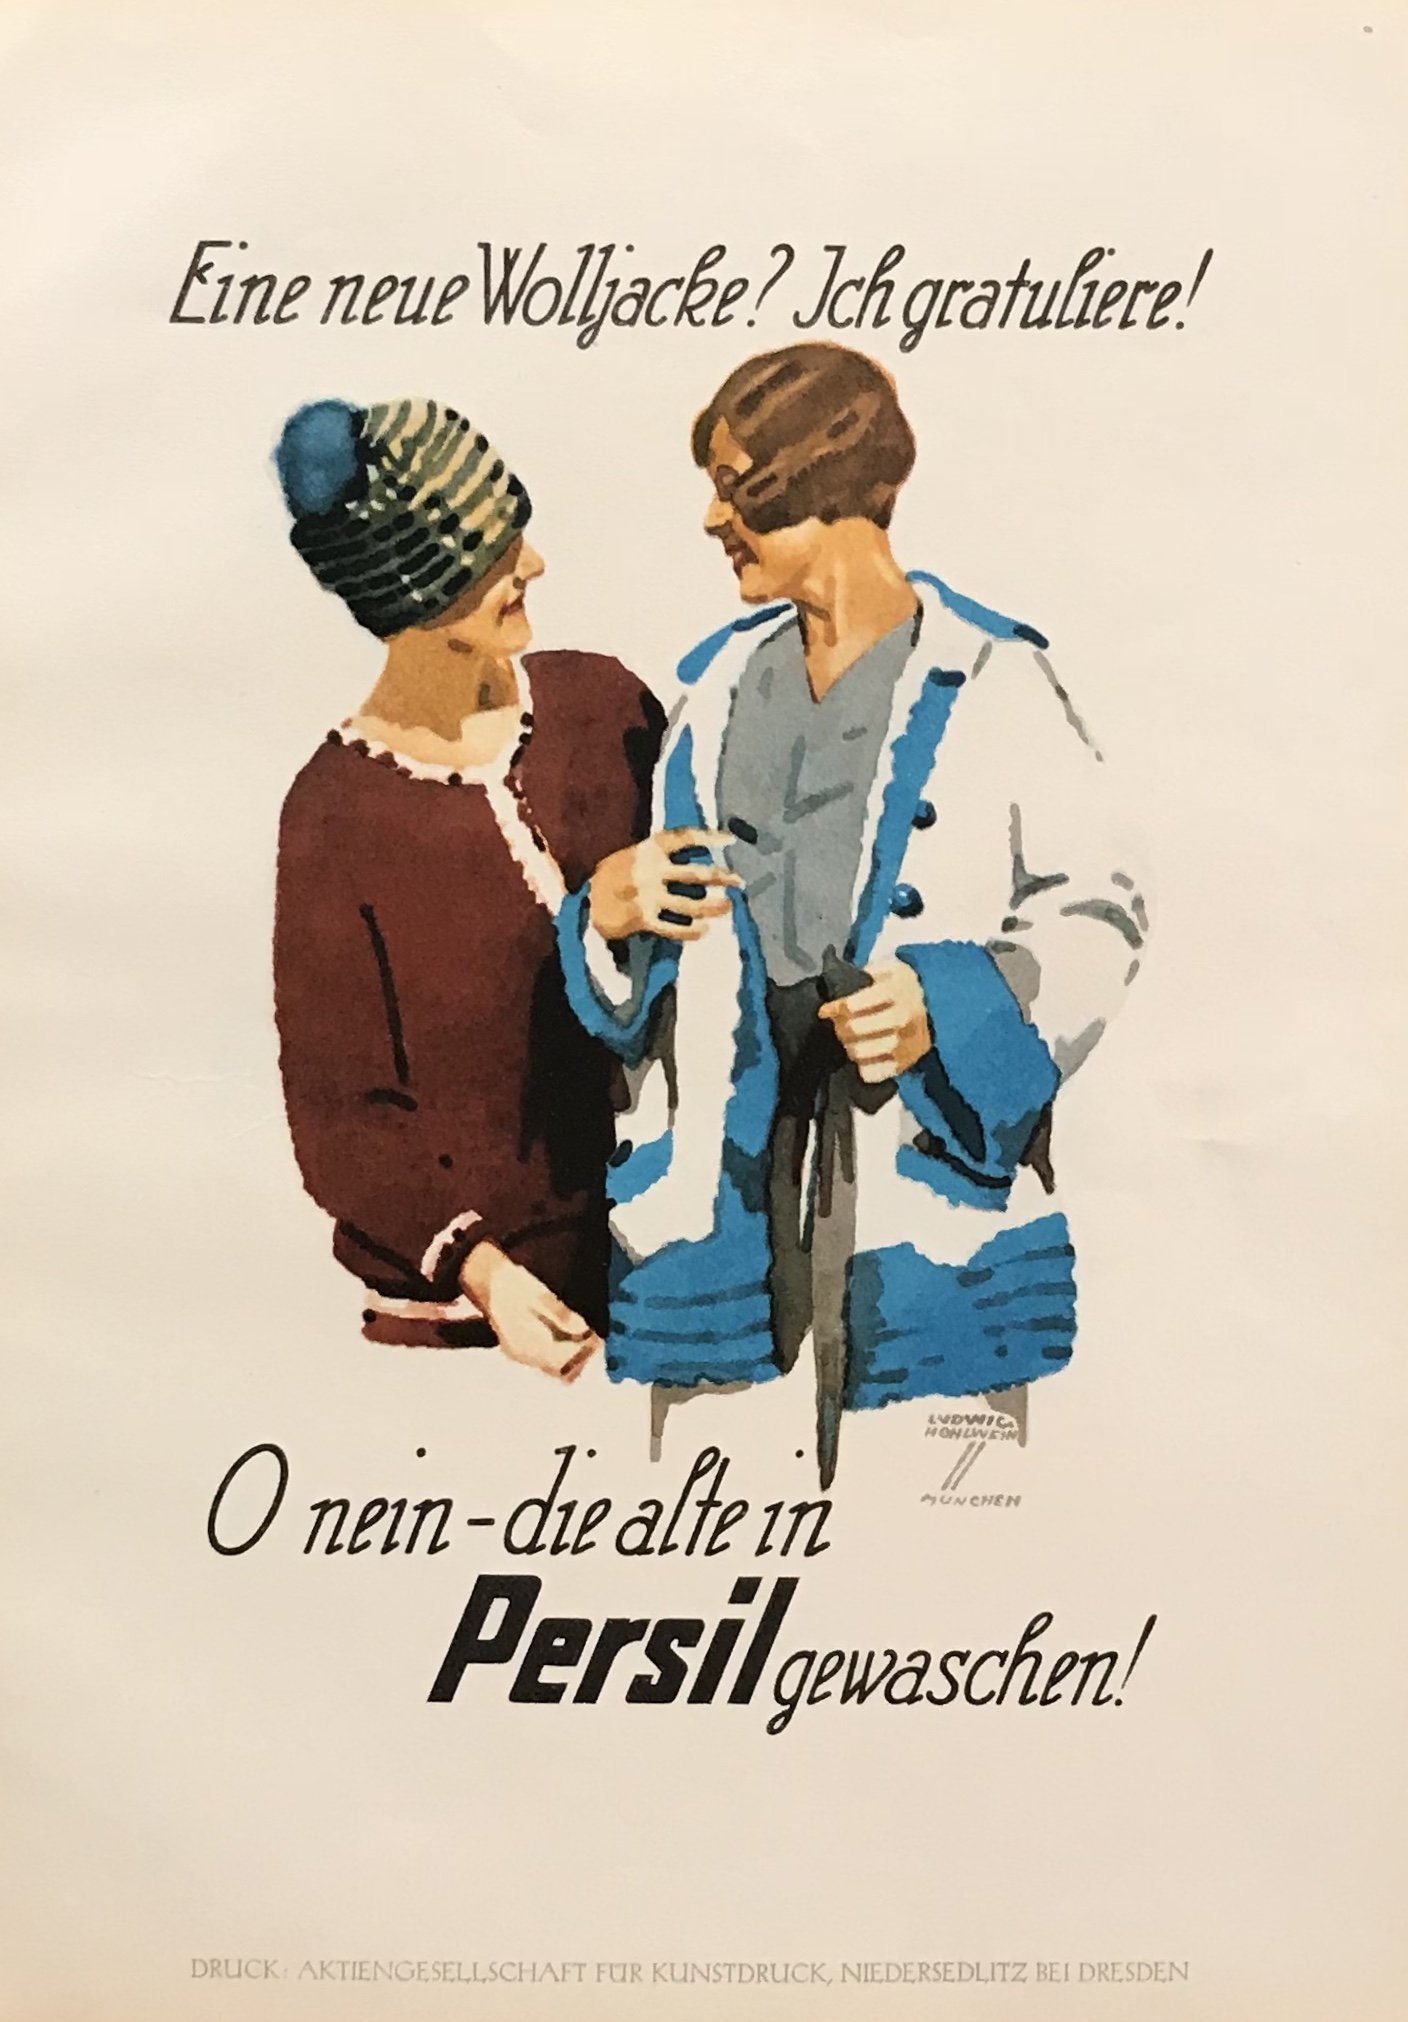 Etsy Wolljacke Original Ich eine Poster, Neue Art German Deco - 1926 Gratuliere Persil